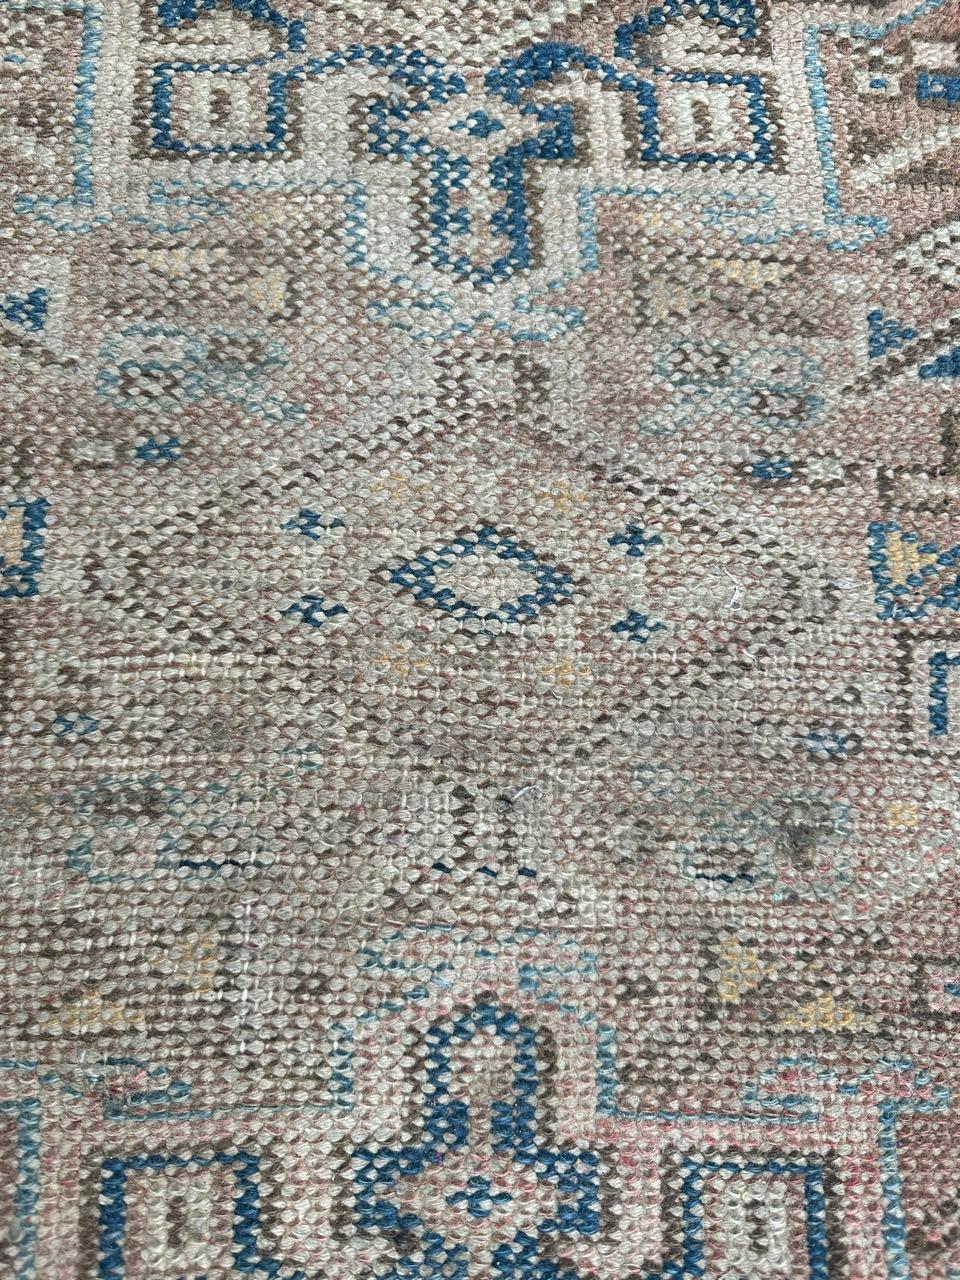 Kleiner antiker Hamadan-Teppich mit hübschem geometrischem Muster und schönen verblassten Farben, komplett handgeknüpft mit Wolle auf Baumwollgrund.

✨✨✨
